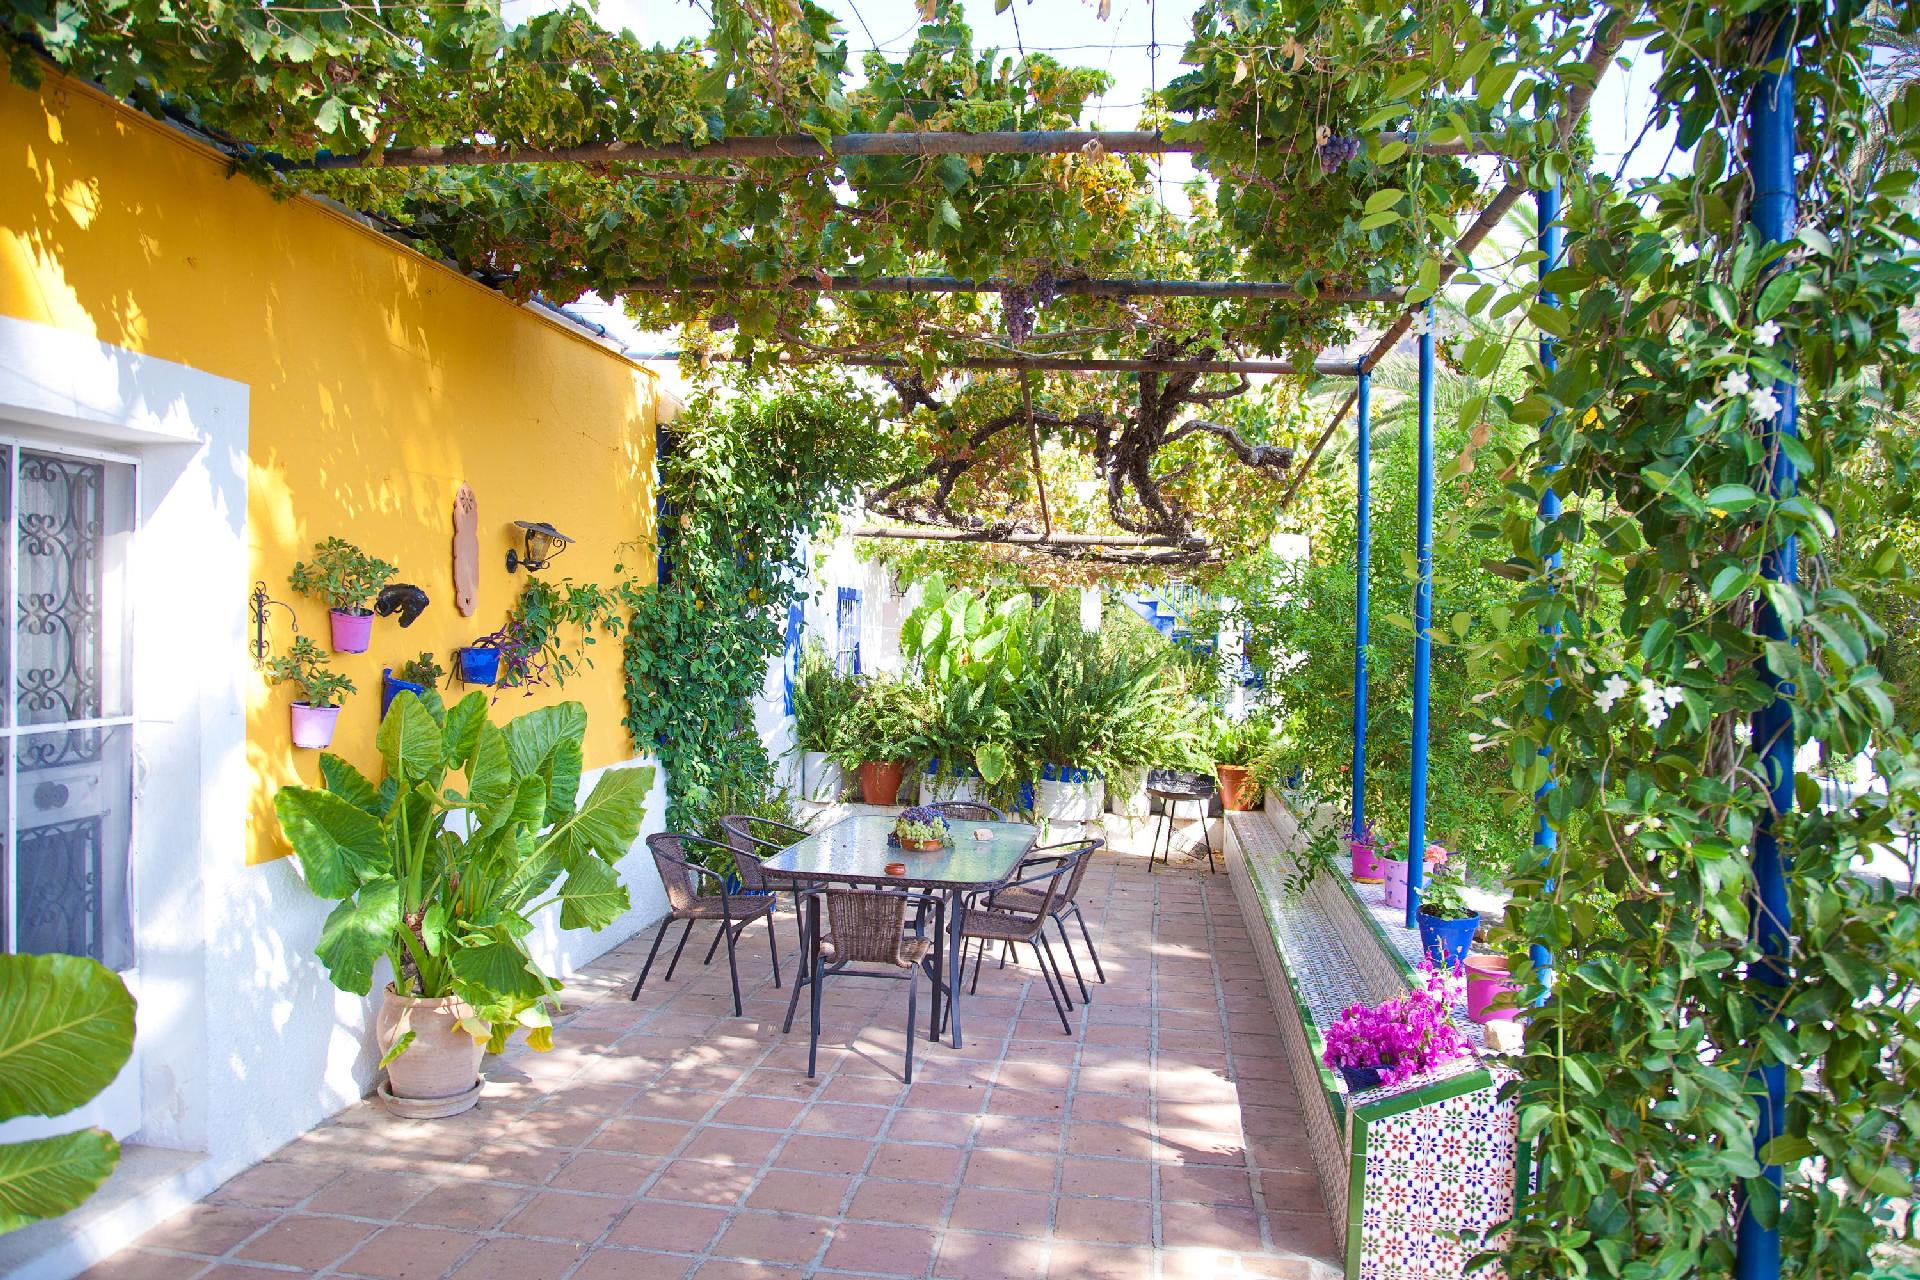 Typisch andalusisches Haus von Orangenplantagen um Ferienhaus  Andalusien